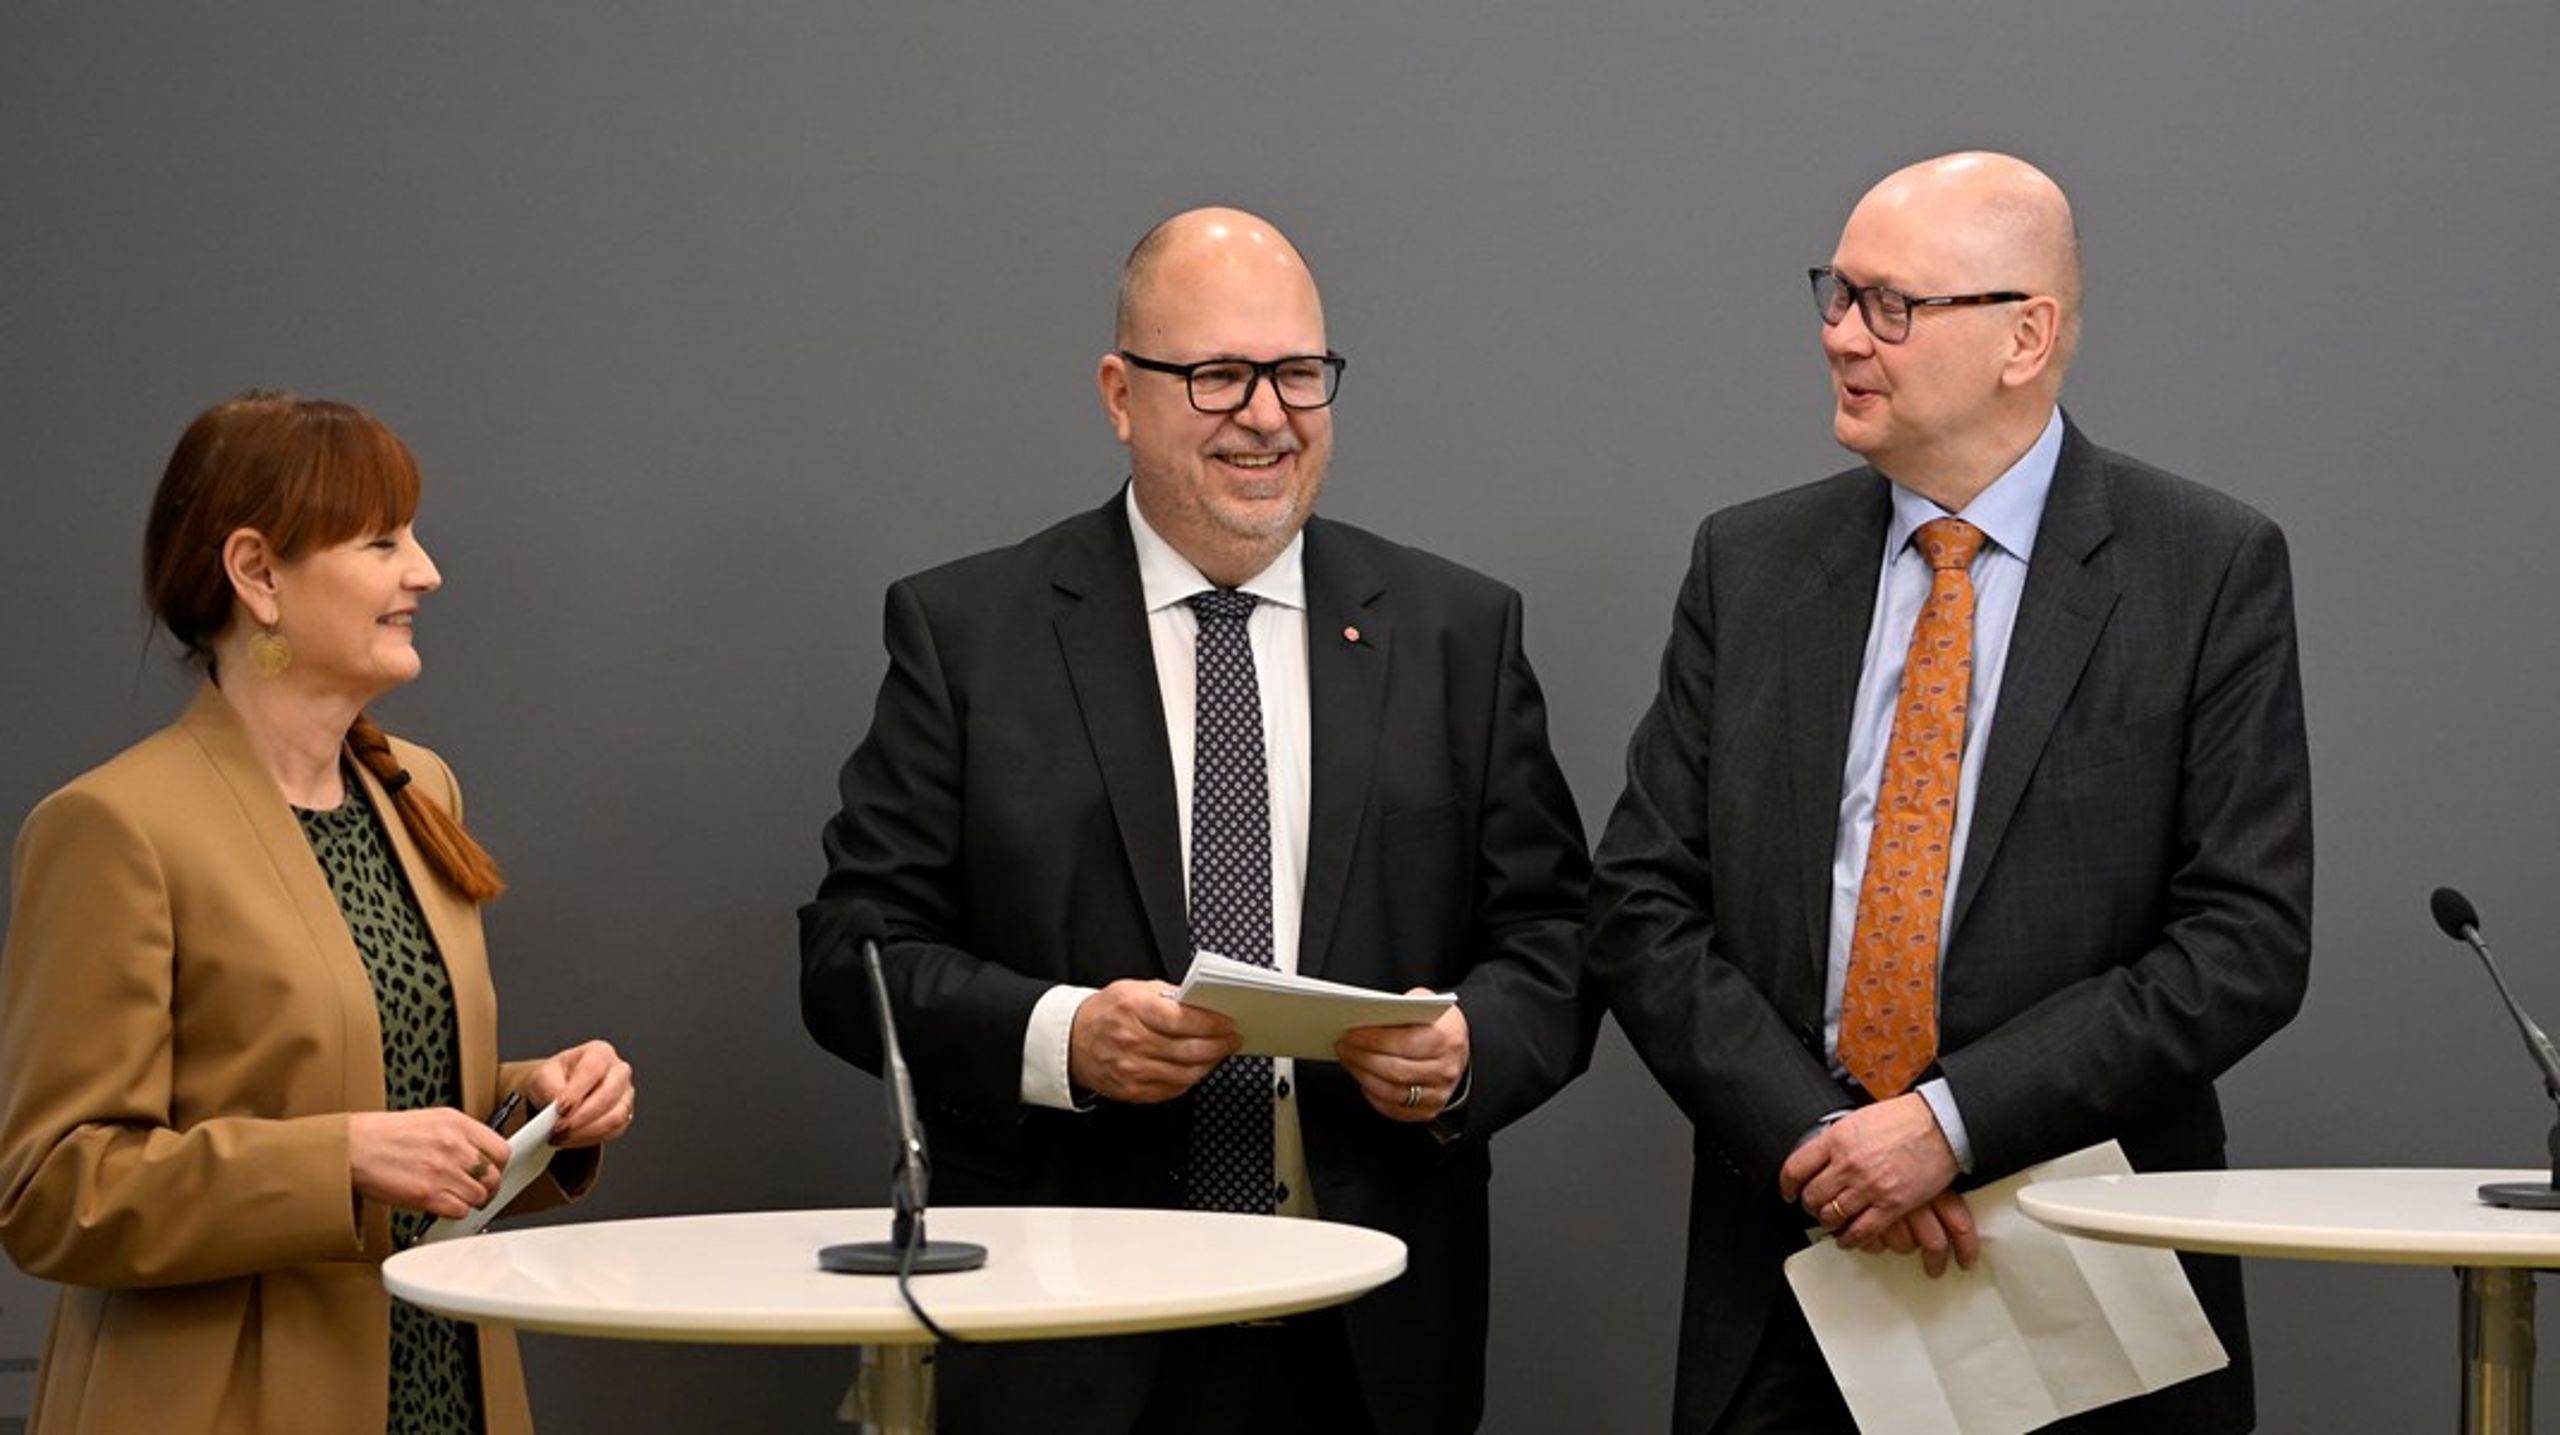 Näringsminister Karl-Petter Thorwaldsson (S) tillsammans med IF 
Metalls förbundsordförande Marie Nilsson och Teknikföretagens vd 
Klas Wåhlberg i samband med presentationen av regeringens nya industristrategi.<br>